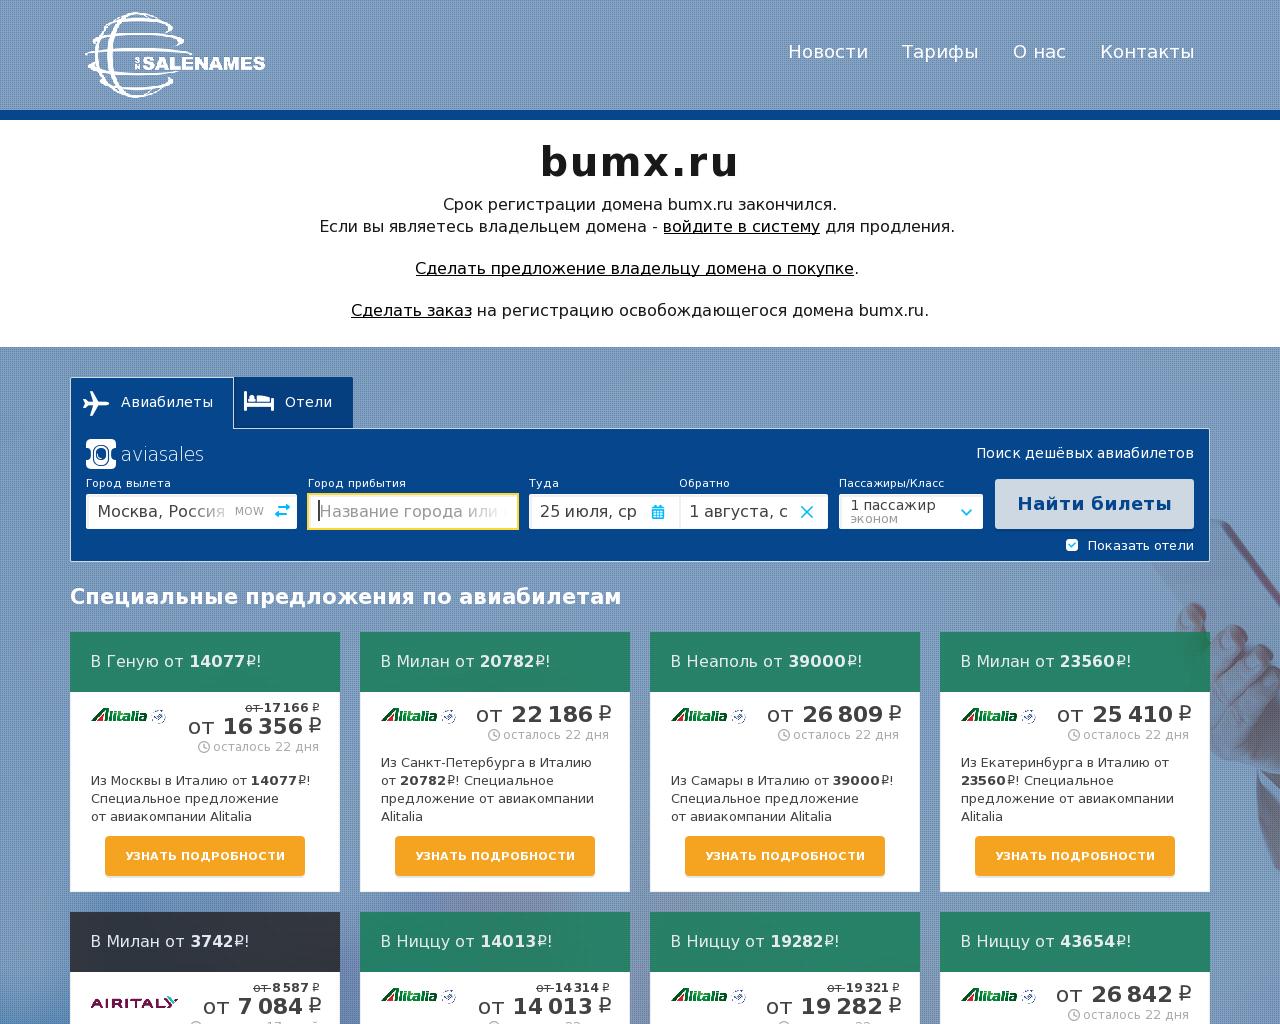 Изображение сайта bumx.ru в разрешении 1280x1024